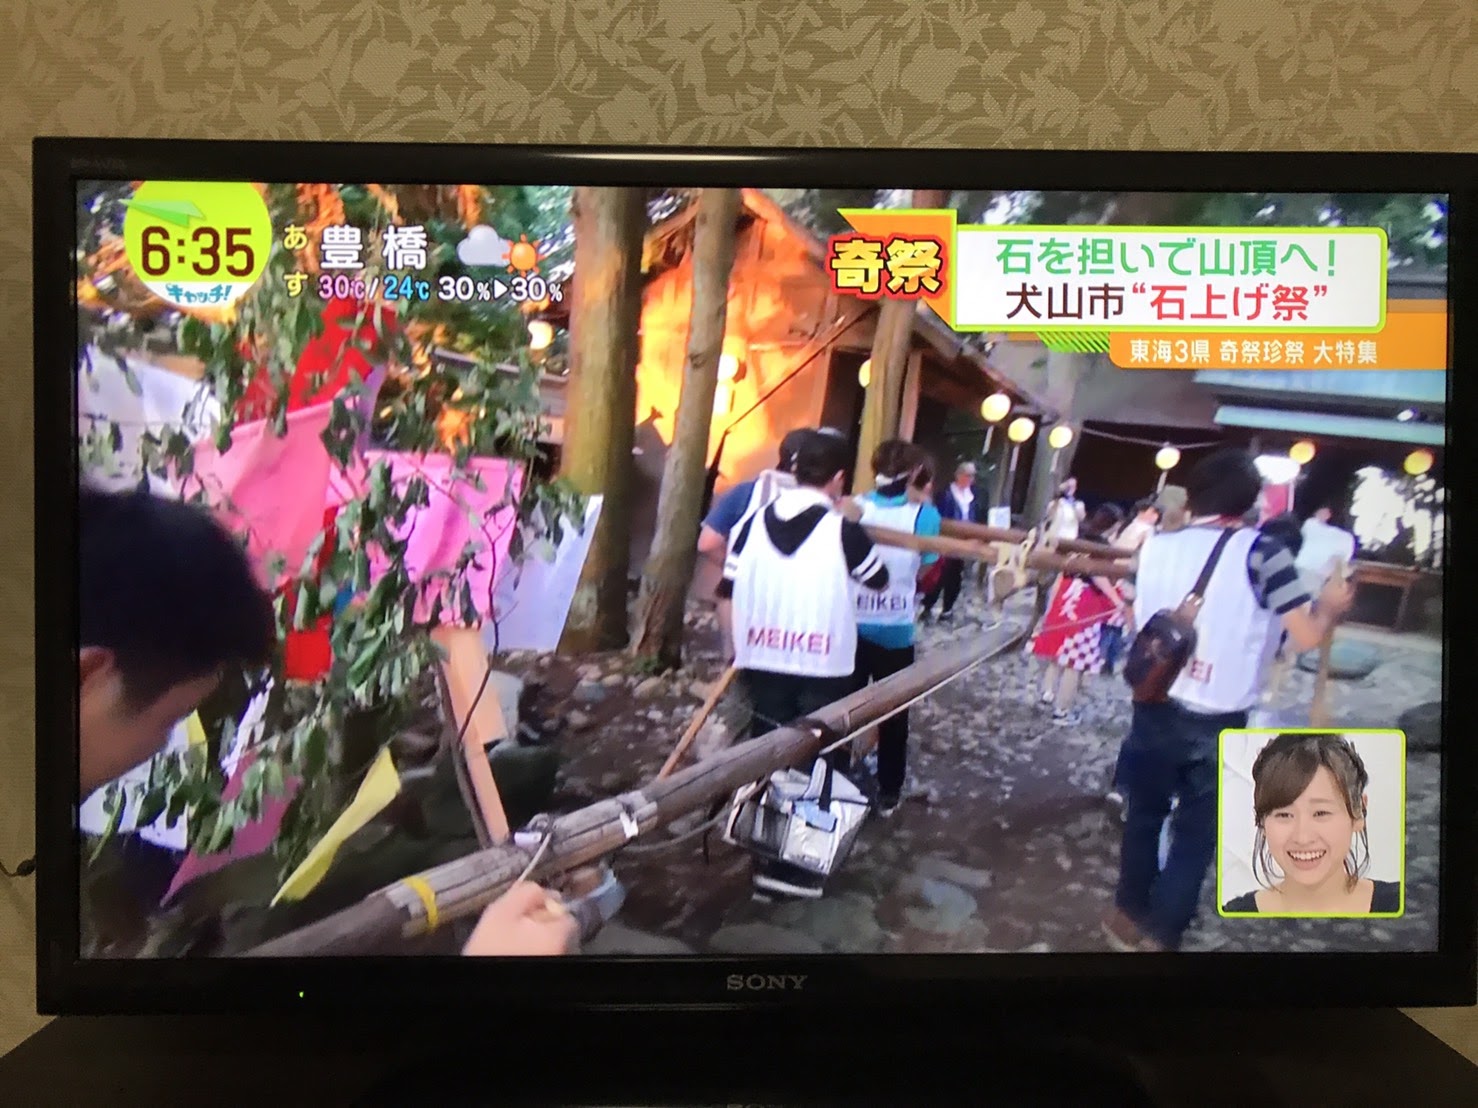 石上げ祭りがテレビで特集されてました。